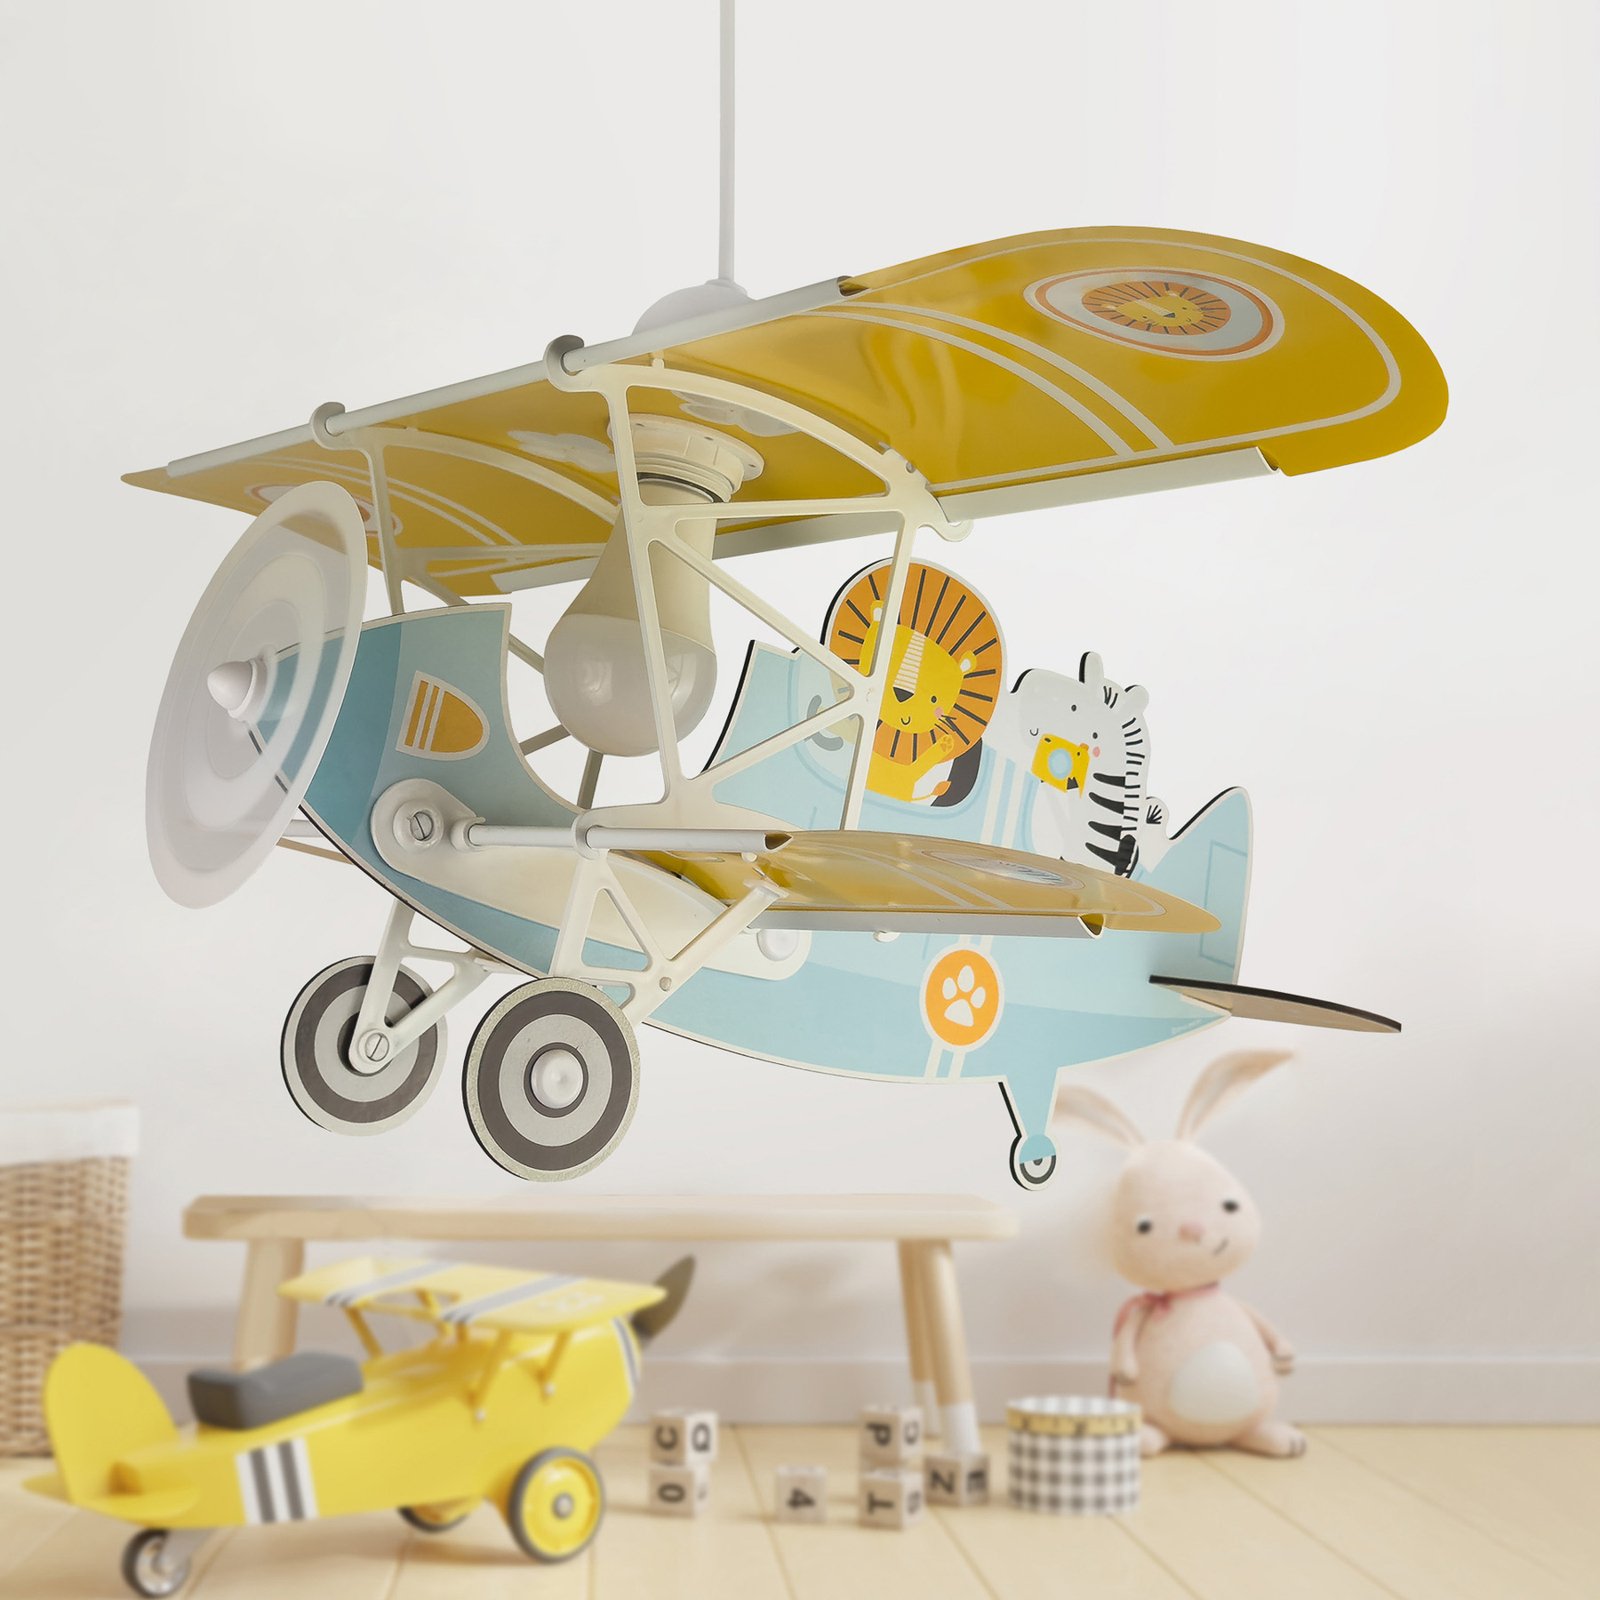 Dalber hanglamp Lion Plane, kleurrijk, hout/kunststof